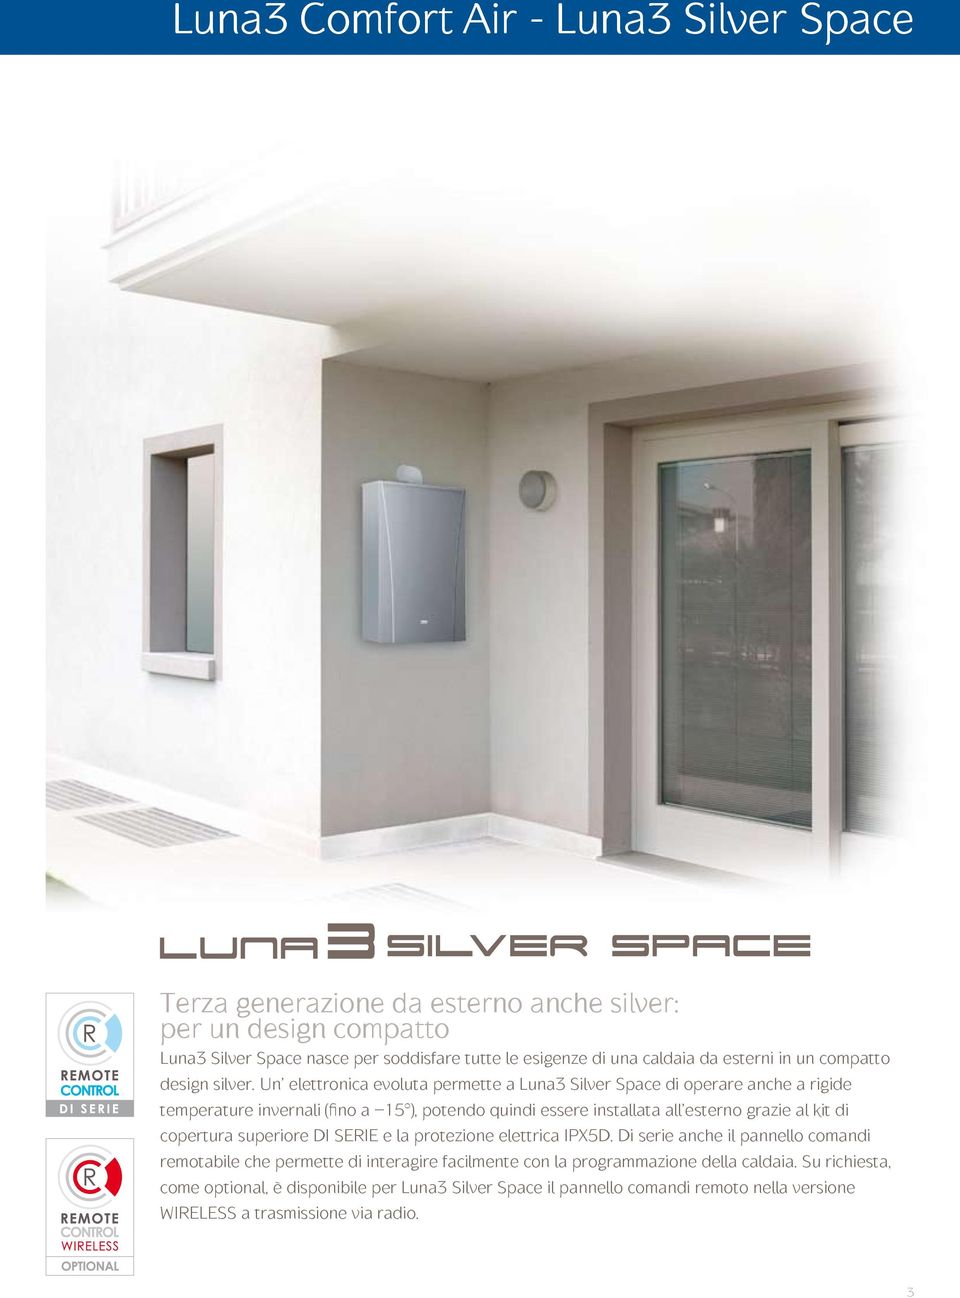 Un elettronica evoluta permette a Luna3 Silver Space di operare anche a rigide temperature invernali (fino a 15 ), potendo quindi essere installata all esterno grazie al kit di